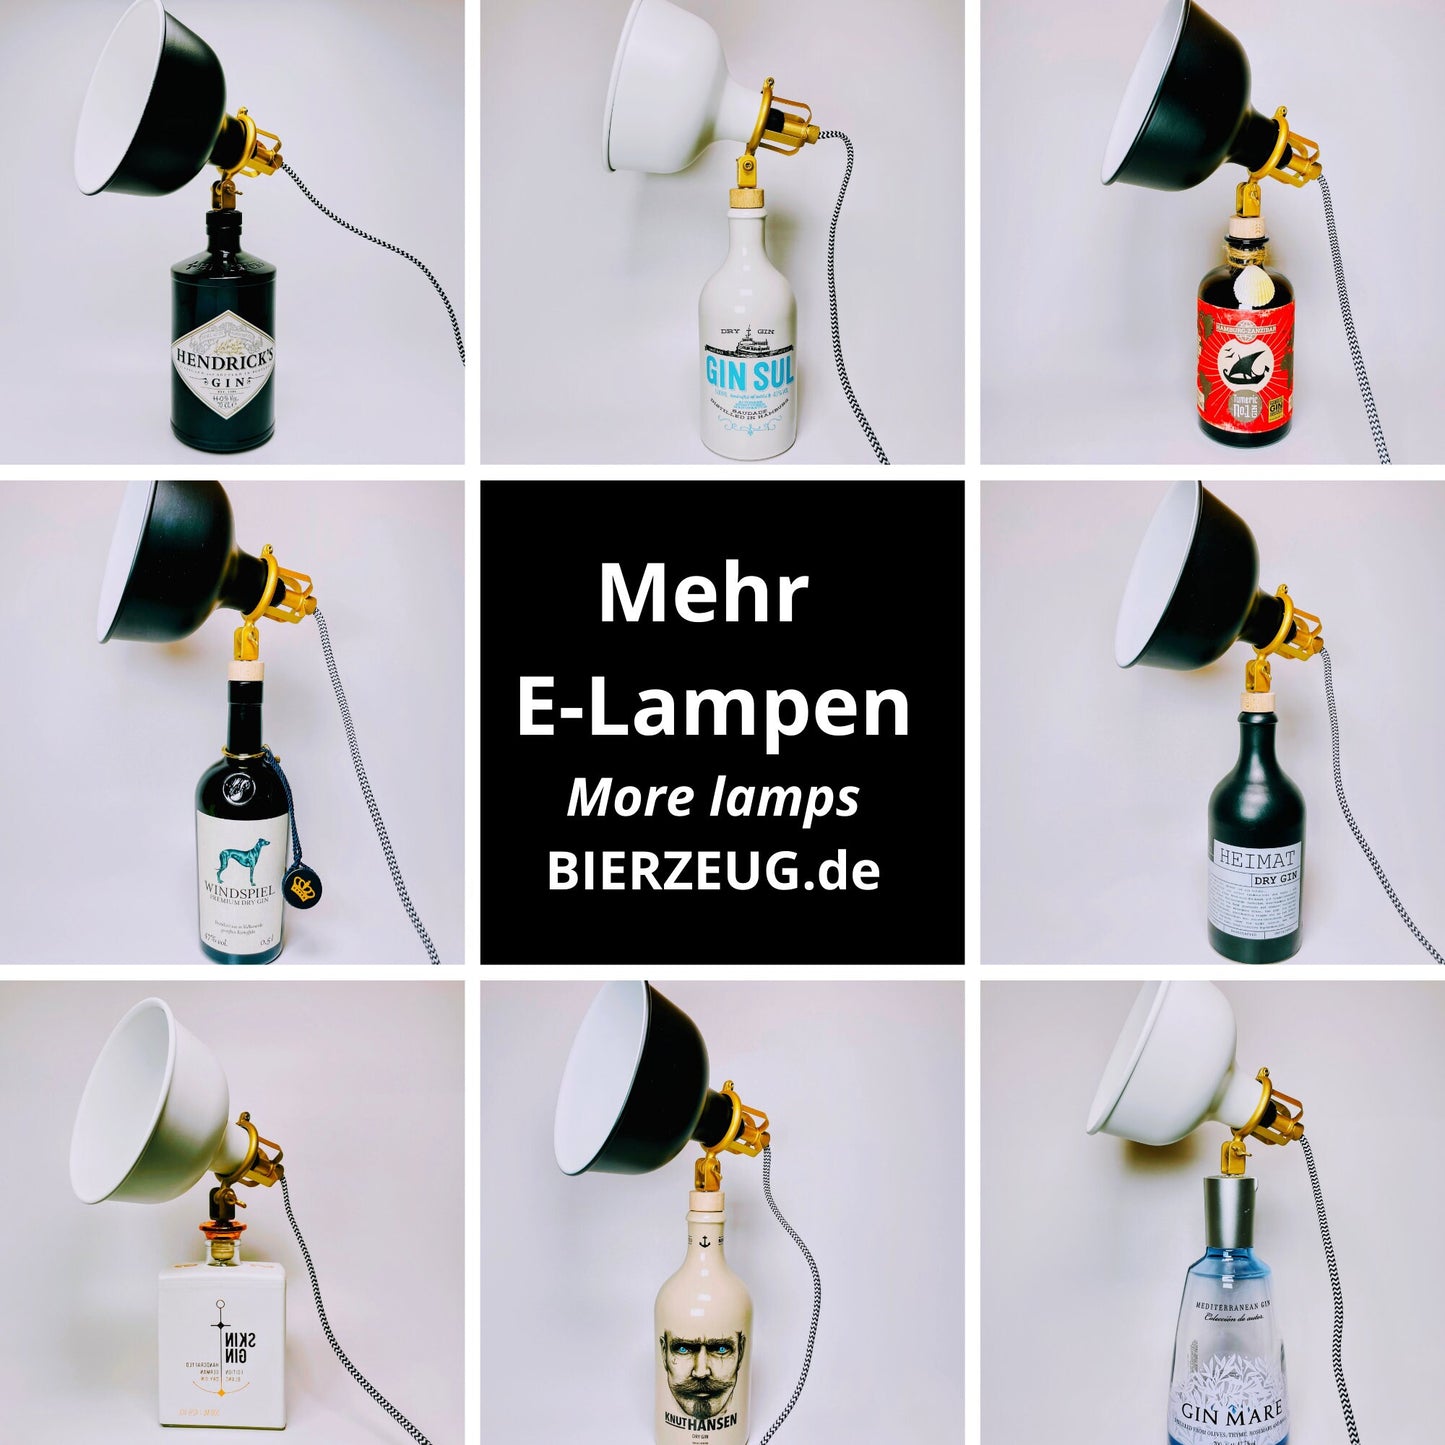 Skin Gin Vintage-Lampe | Handgemachte nachhaltige Tischlampe aus Skin Gin | Einzigartige Geschenkidee | Retro Deko-Licht | Upcycling Leuchte